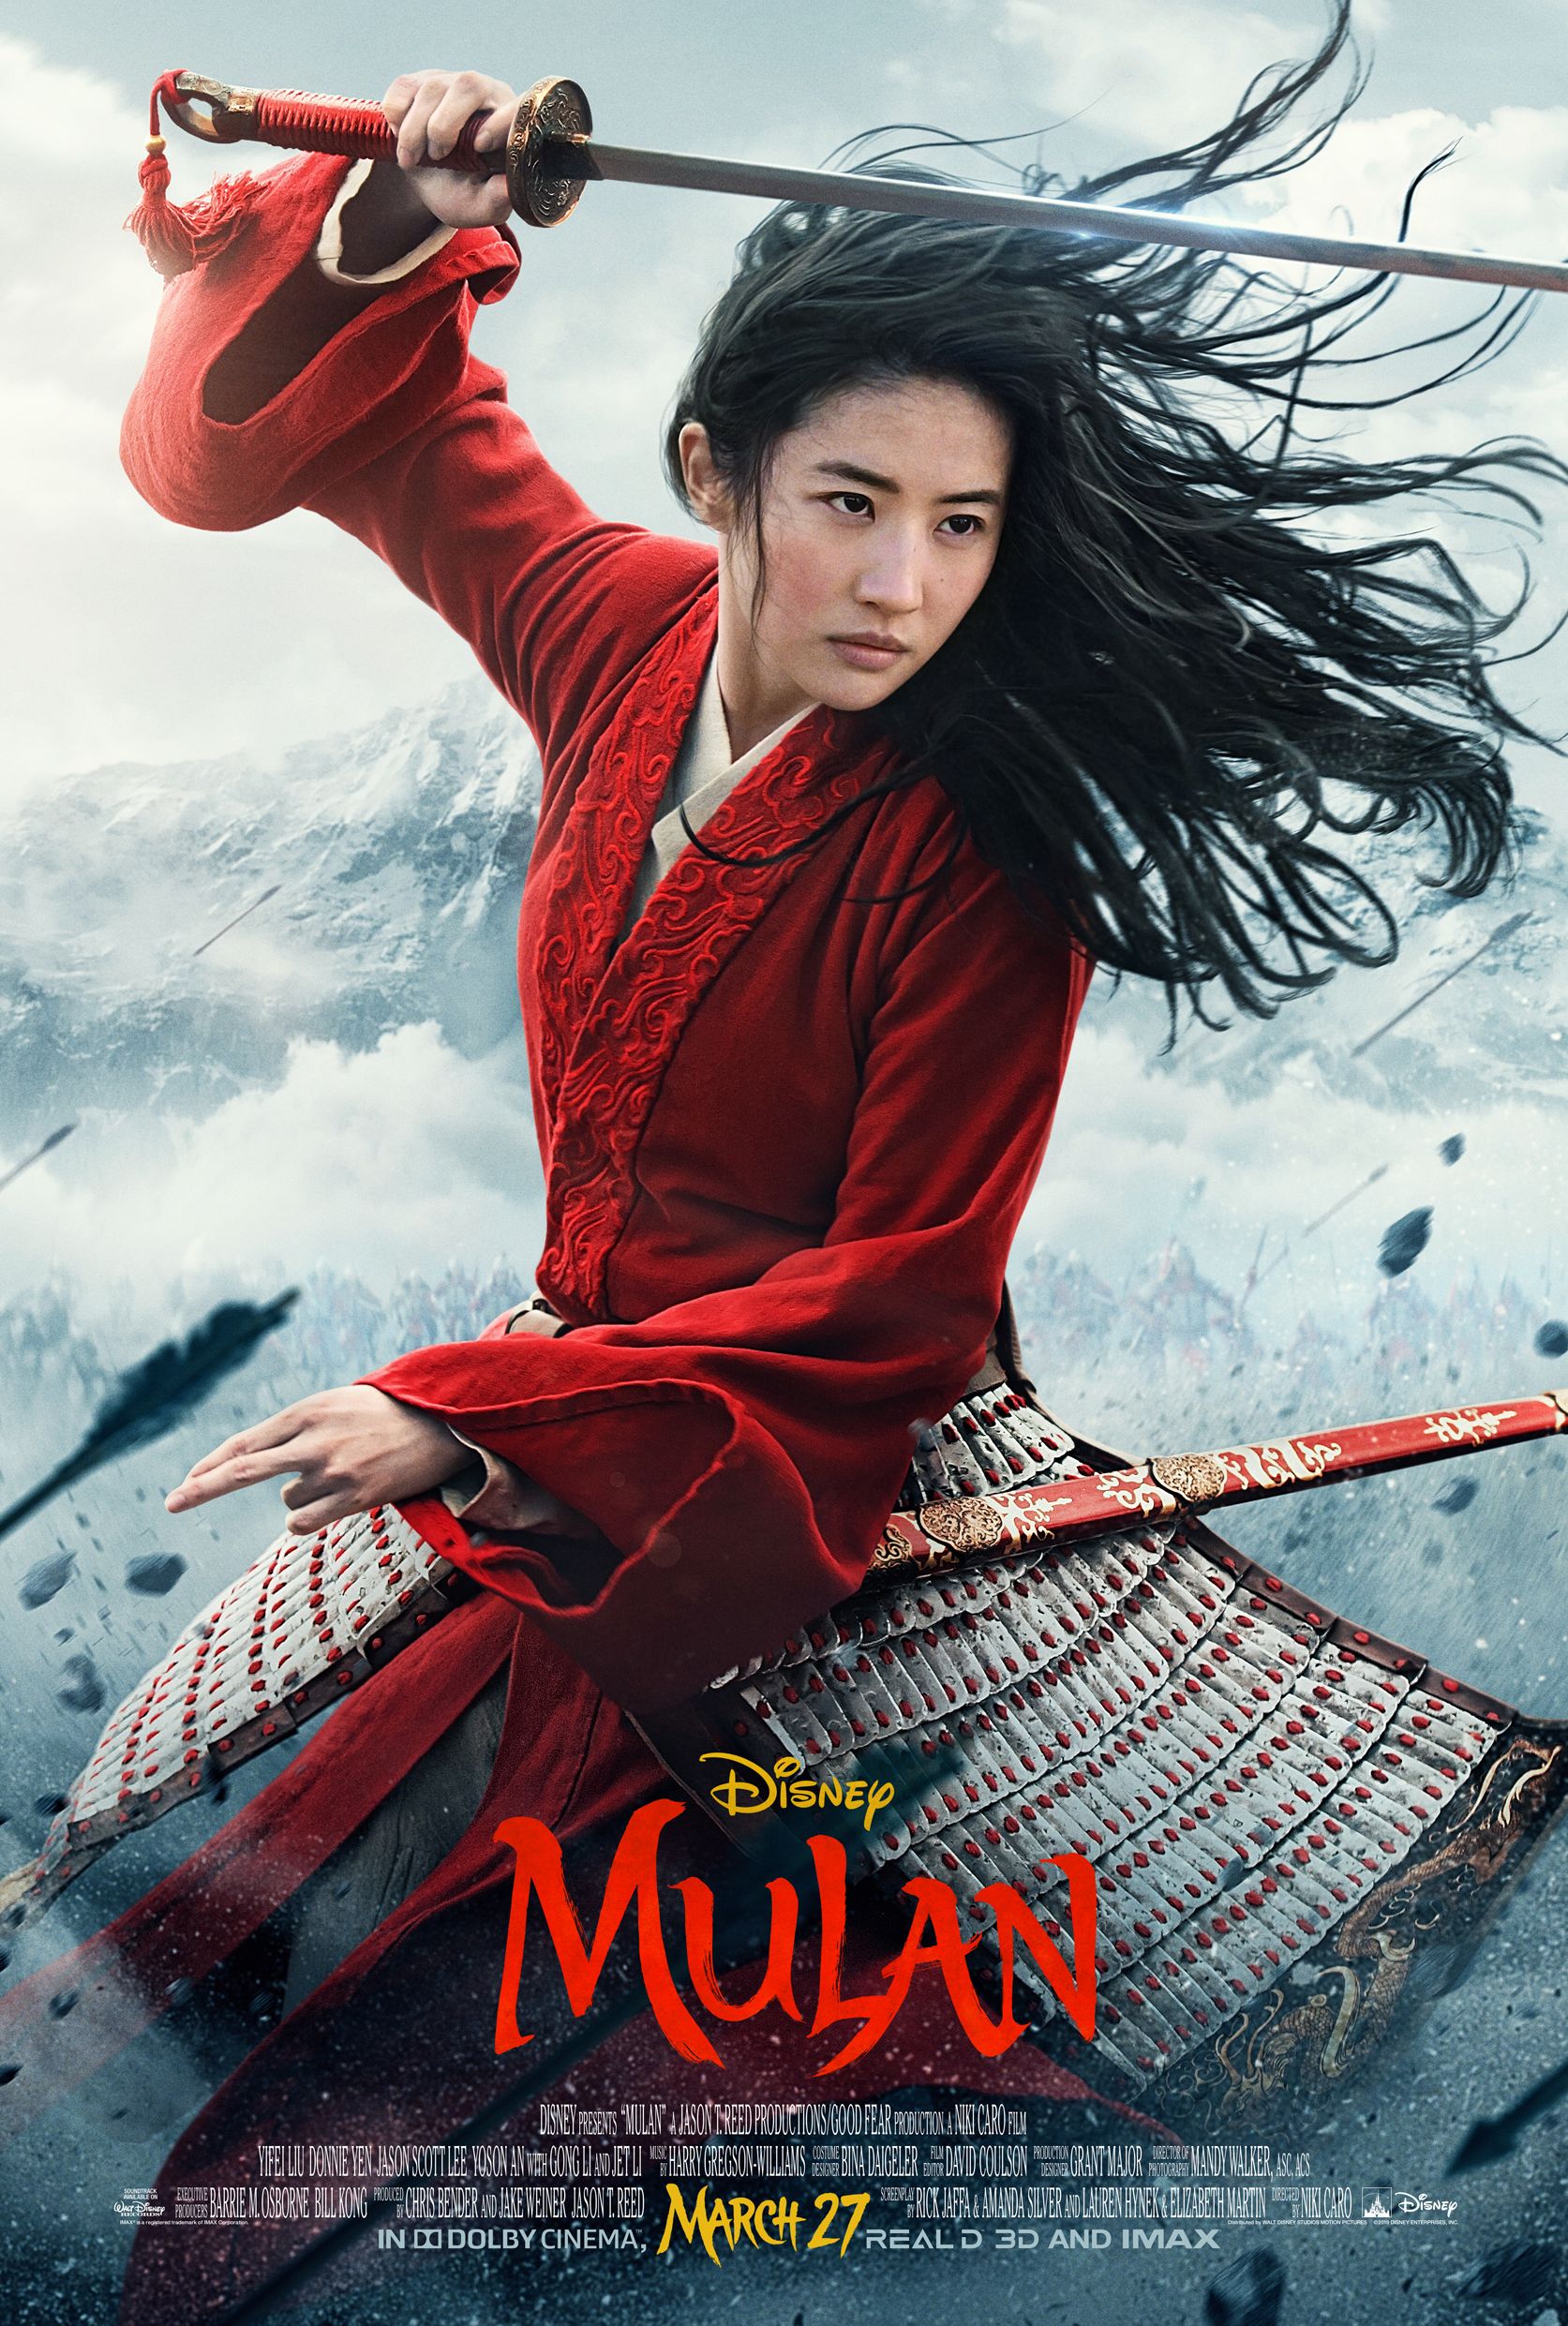 Disney's 'Mulan' Poster